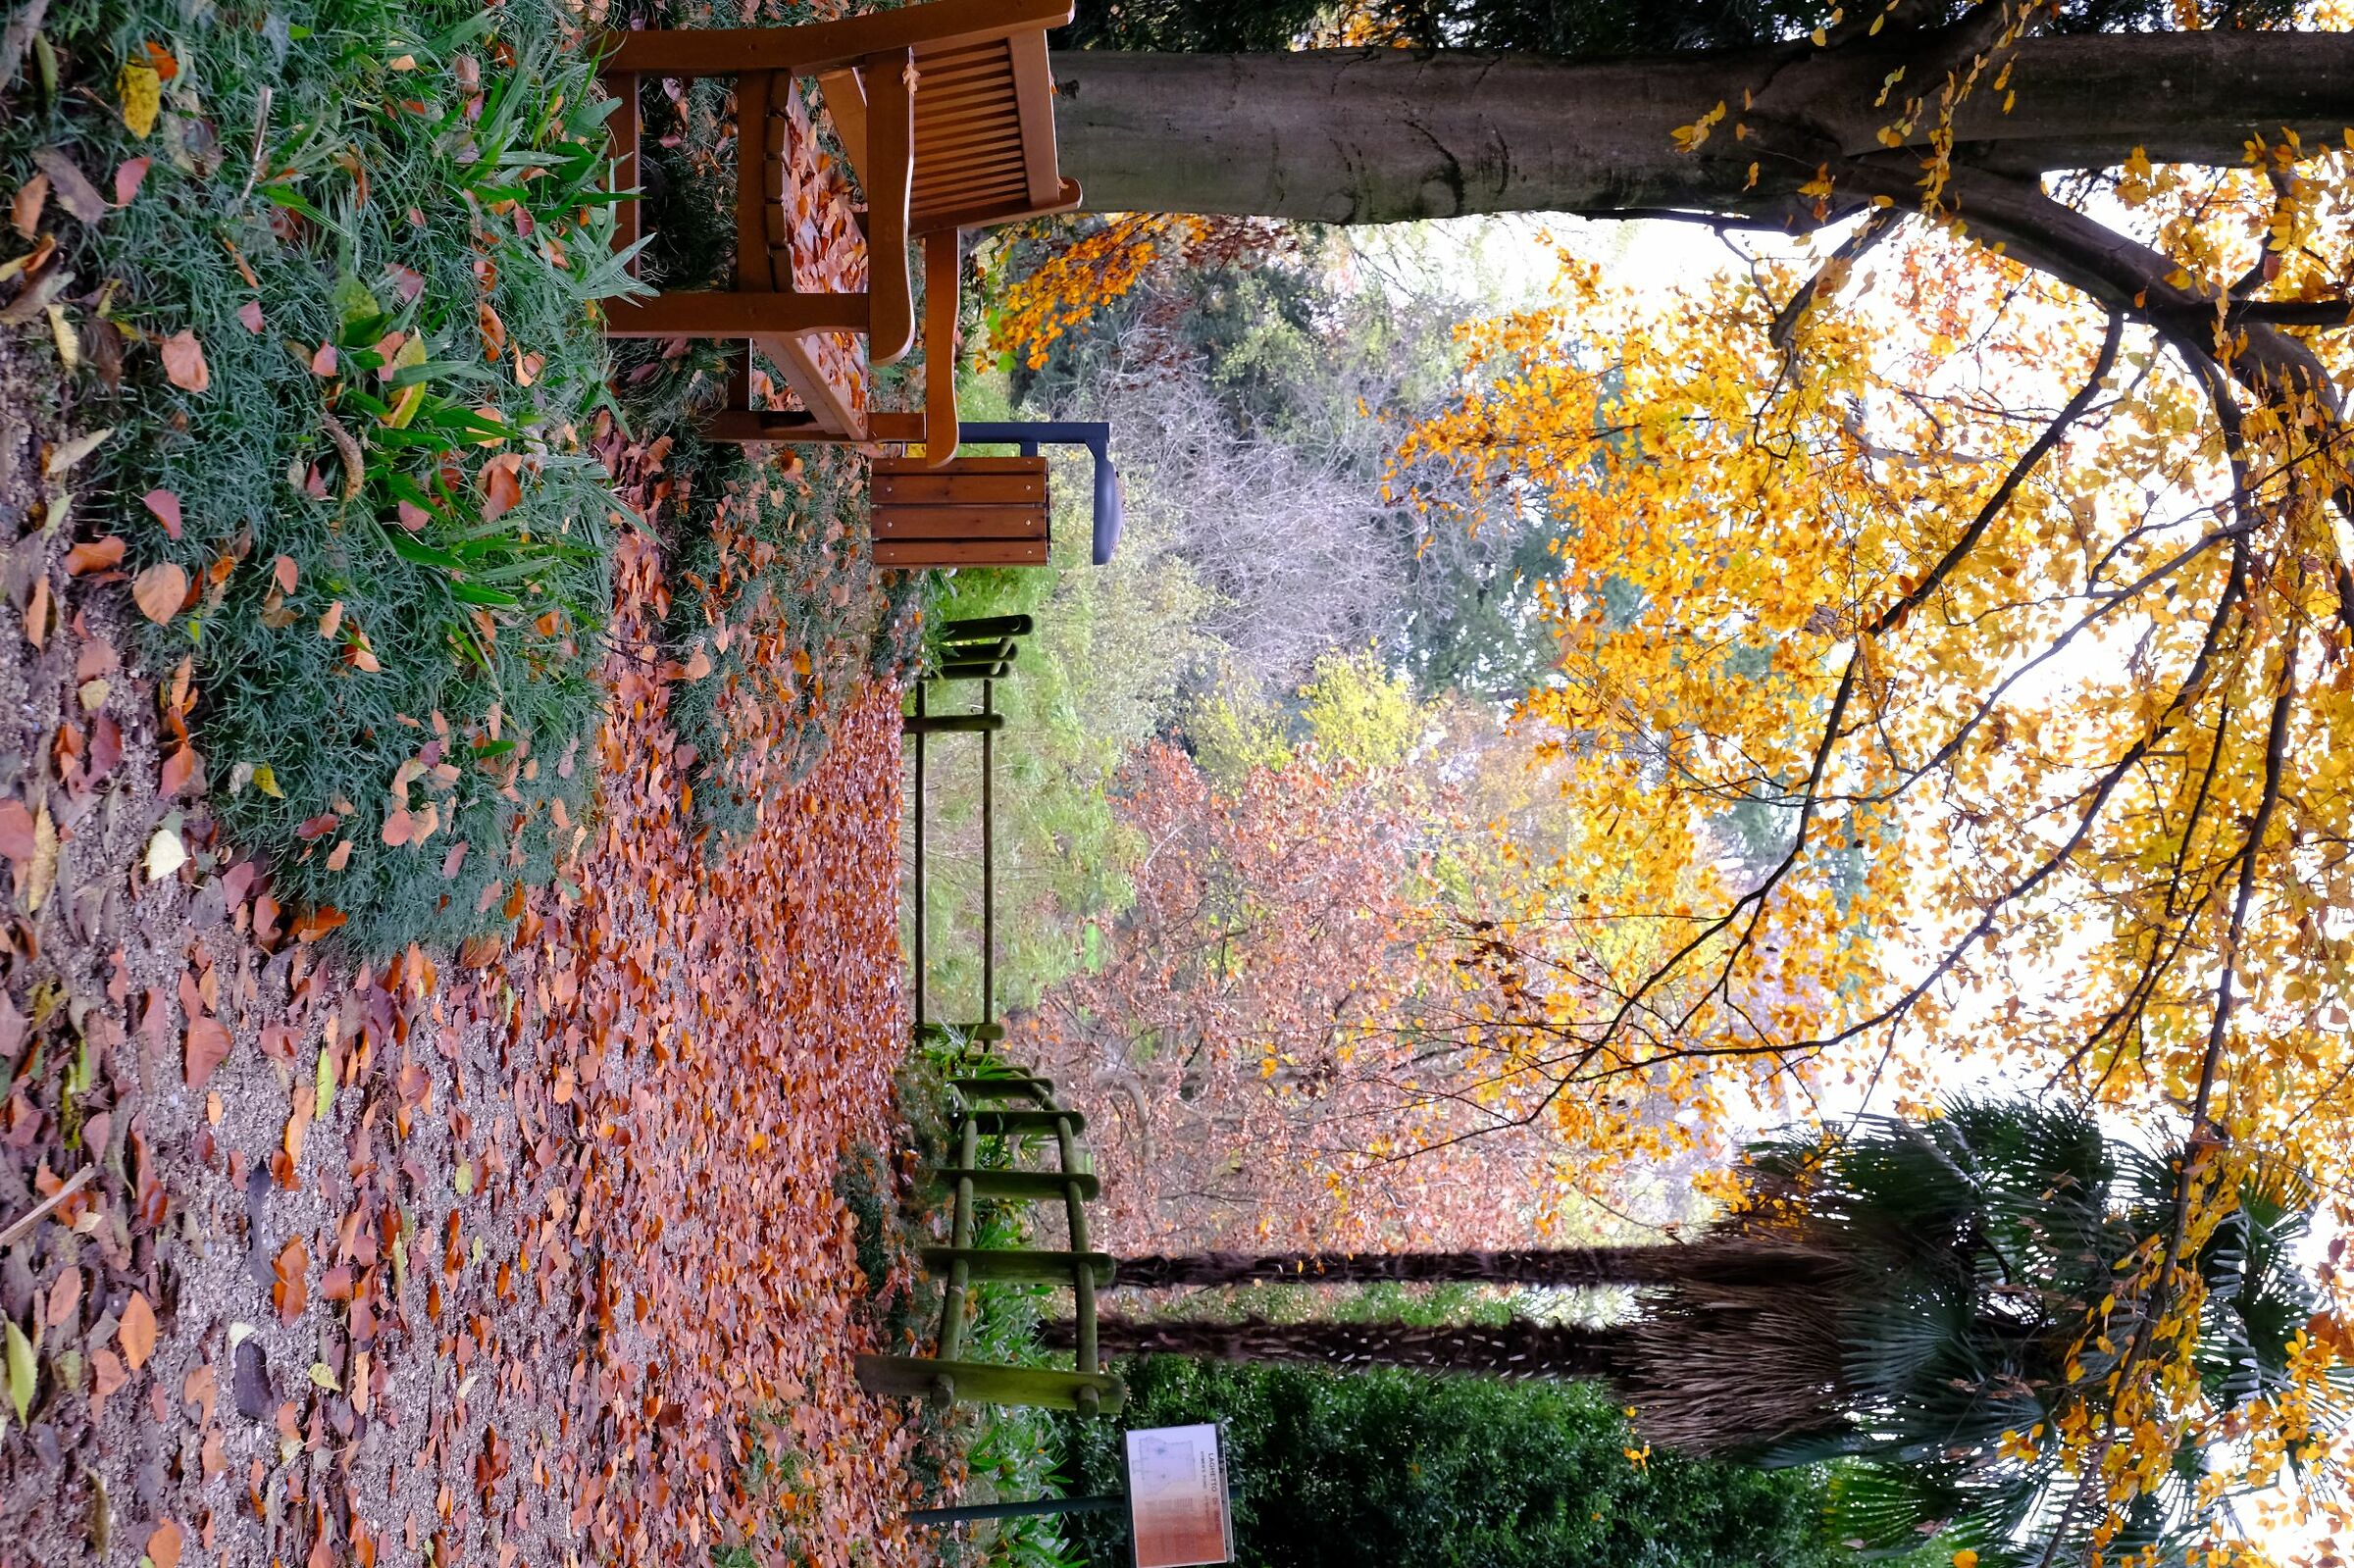 Villa Manin ithe park in autumn...